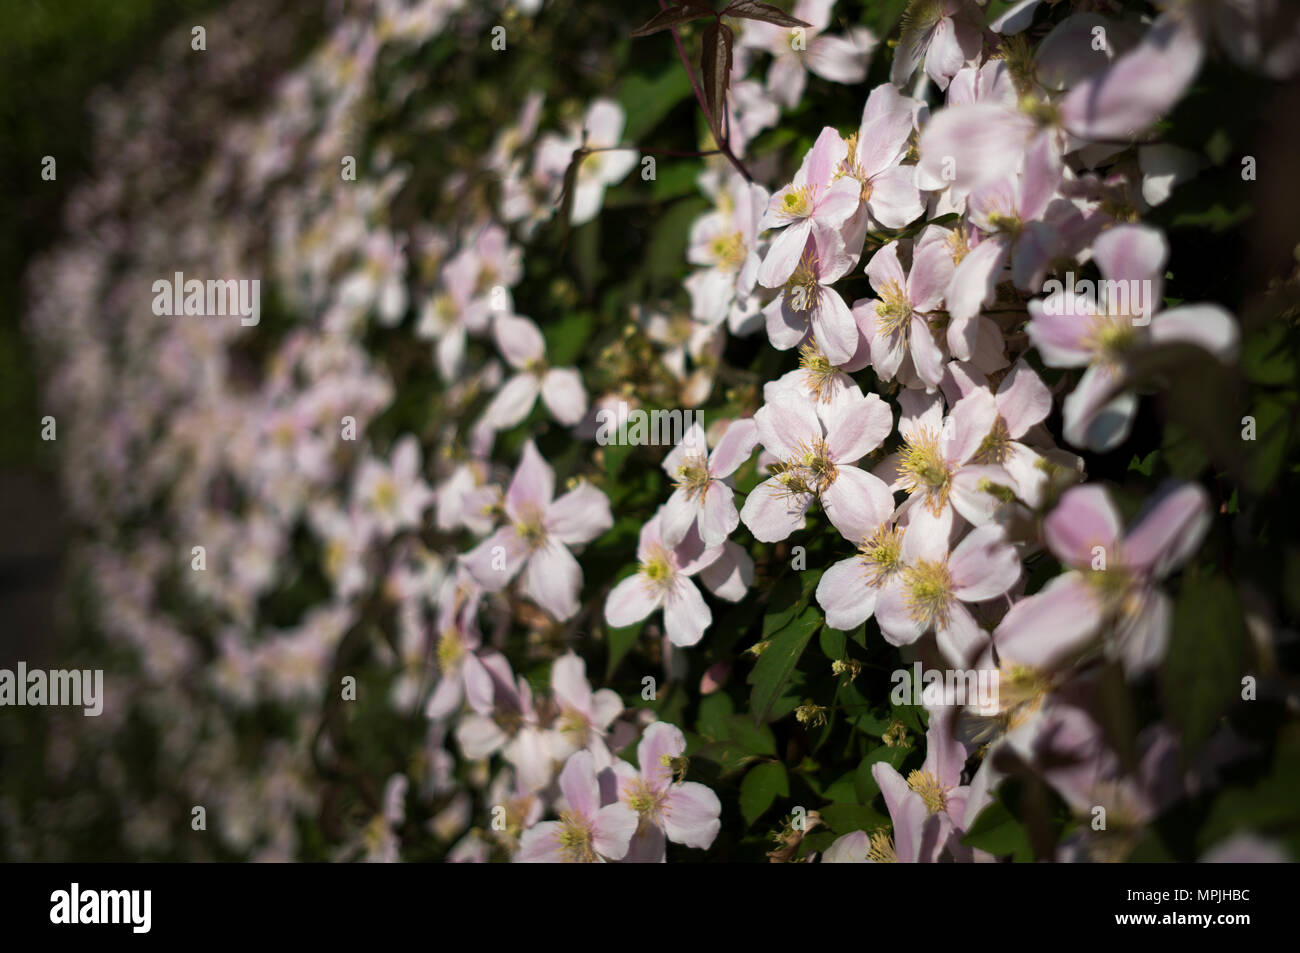 Clematis Montana crece en un jardín inglés tradicional país de Thaxted Essex, Inglaterra en mayo. Foto de stock